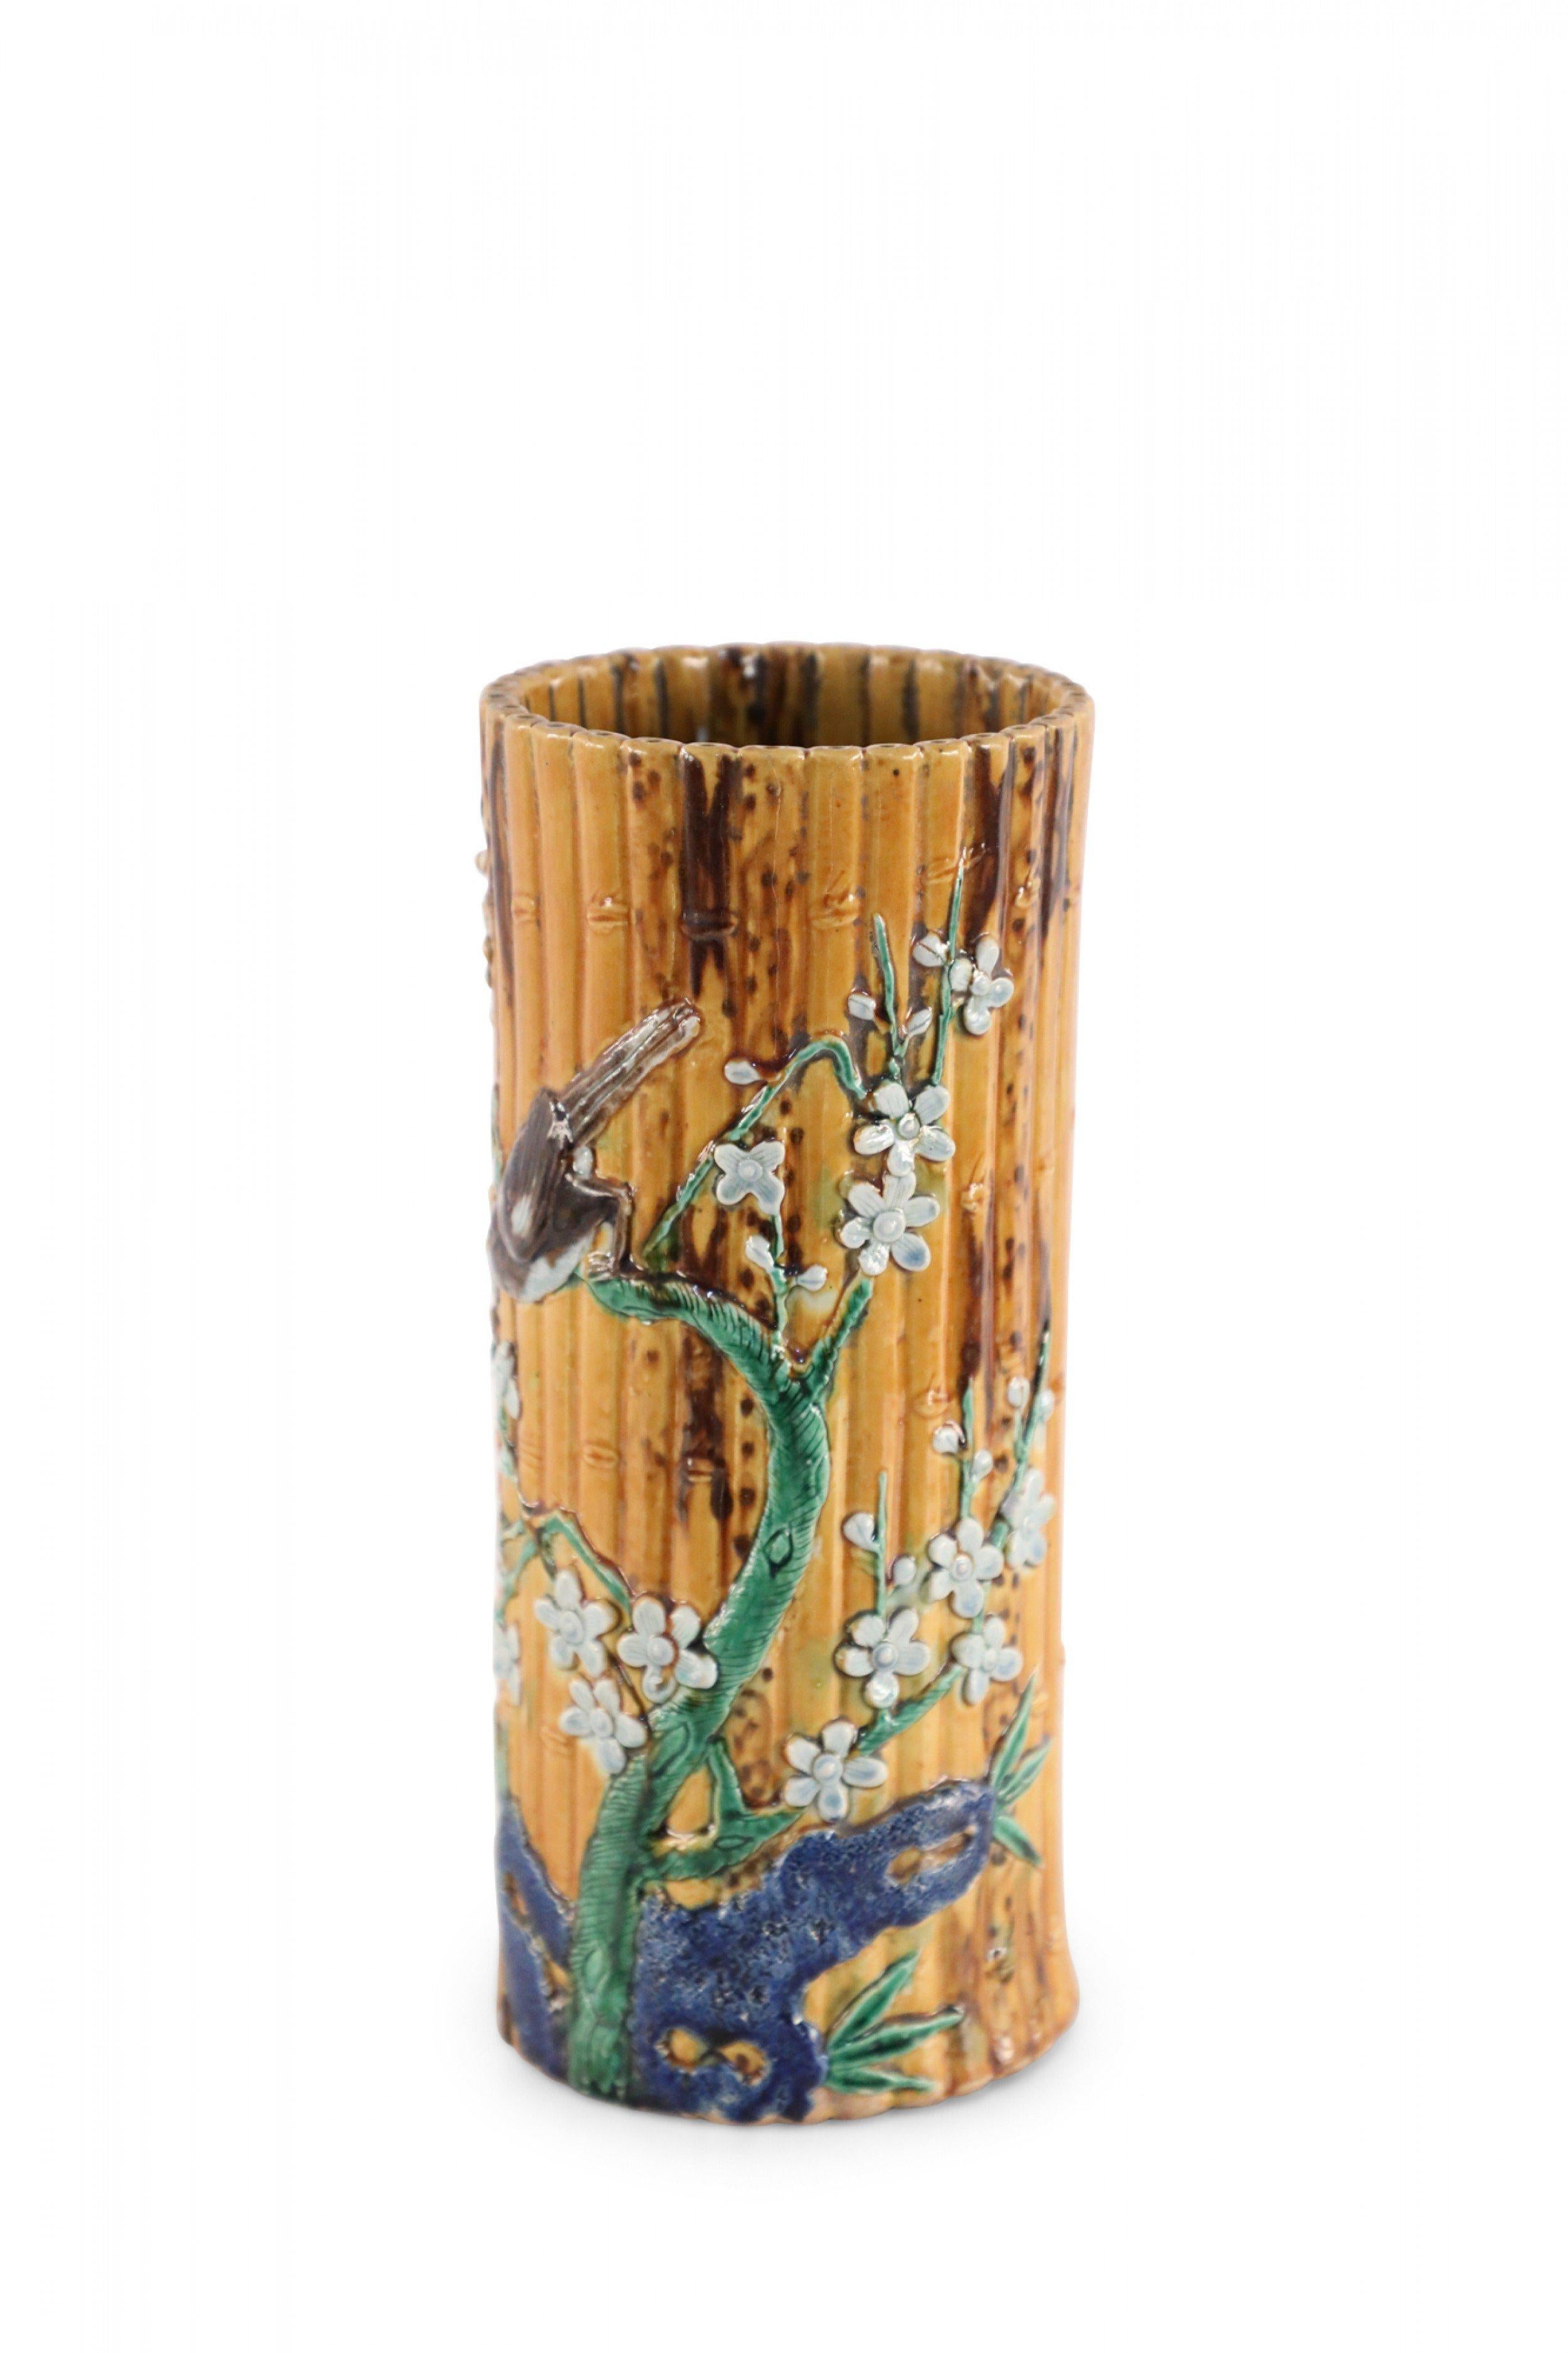 Zylindrische Porzellanvase aus chinesischem Bambusimitat in einer Form, die im alten China traditionell als Hutständer verwendet wurde, verziert mit dem erhabenen Motiv eines Vogels, der auf einem blühenden Zweig sitzt.
      